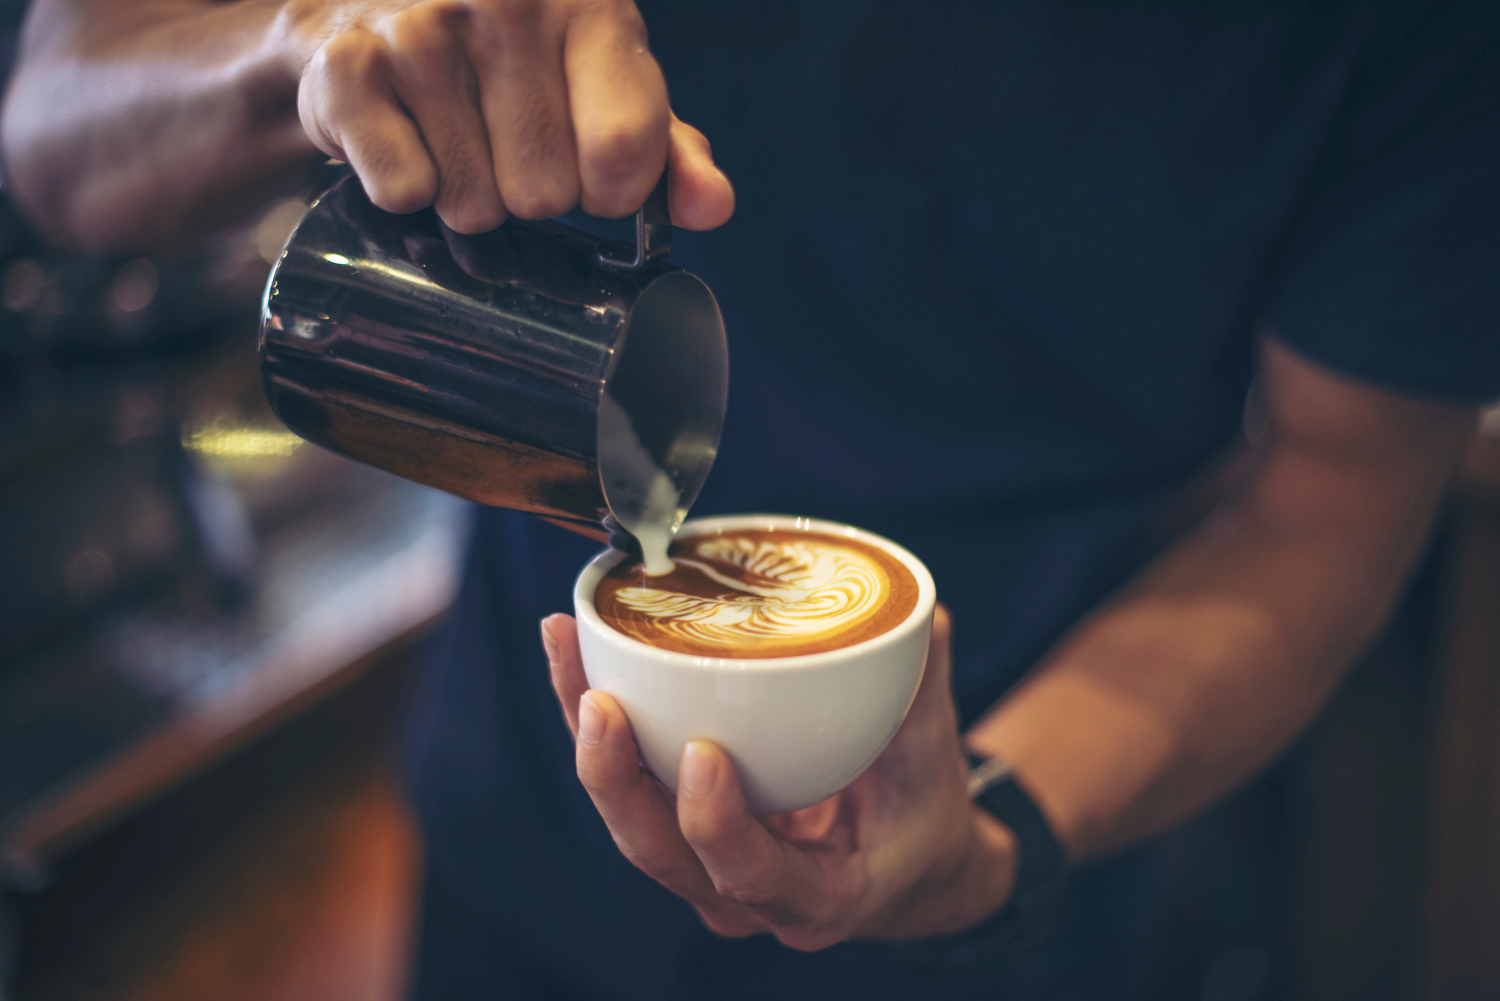 Bisnis kedai kopi dapat menawarkan keuntungan yang besar jika dikelola dengan baik